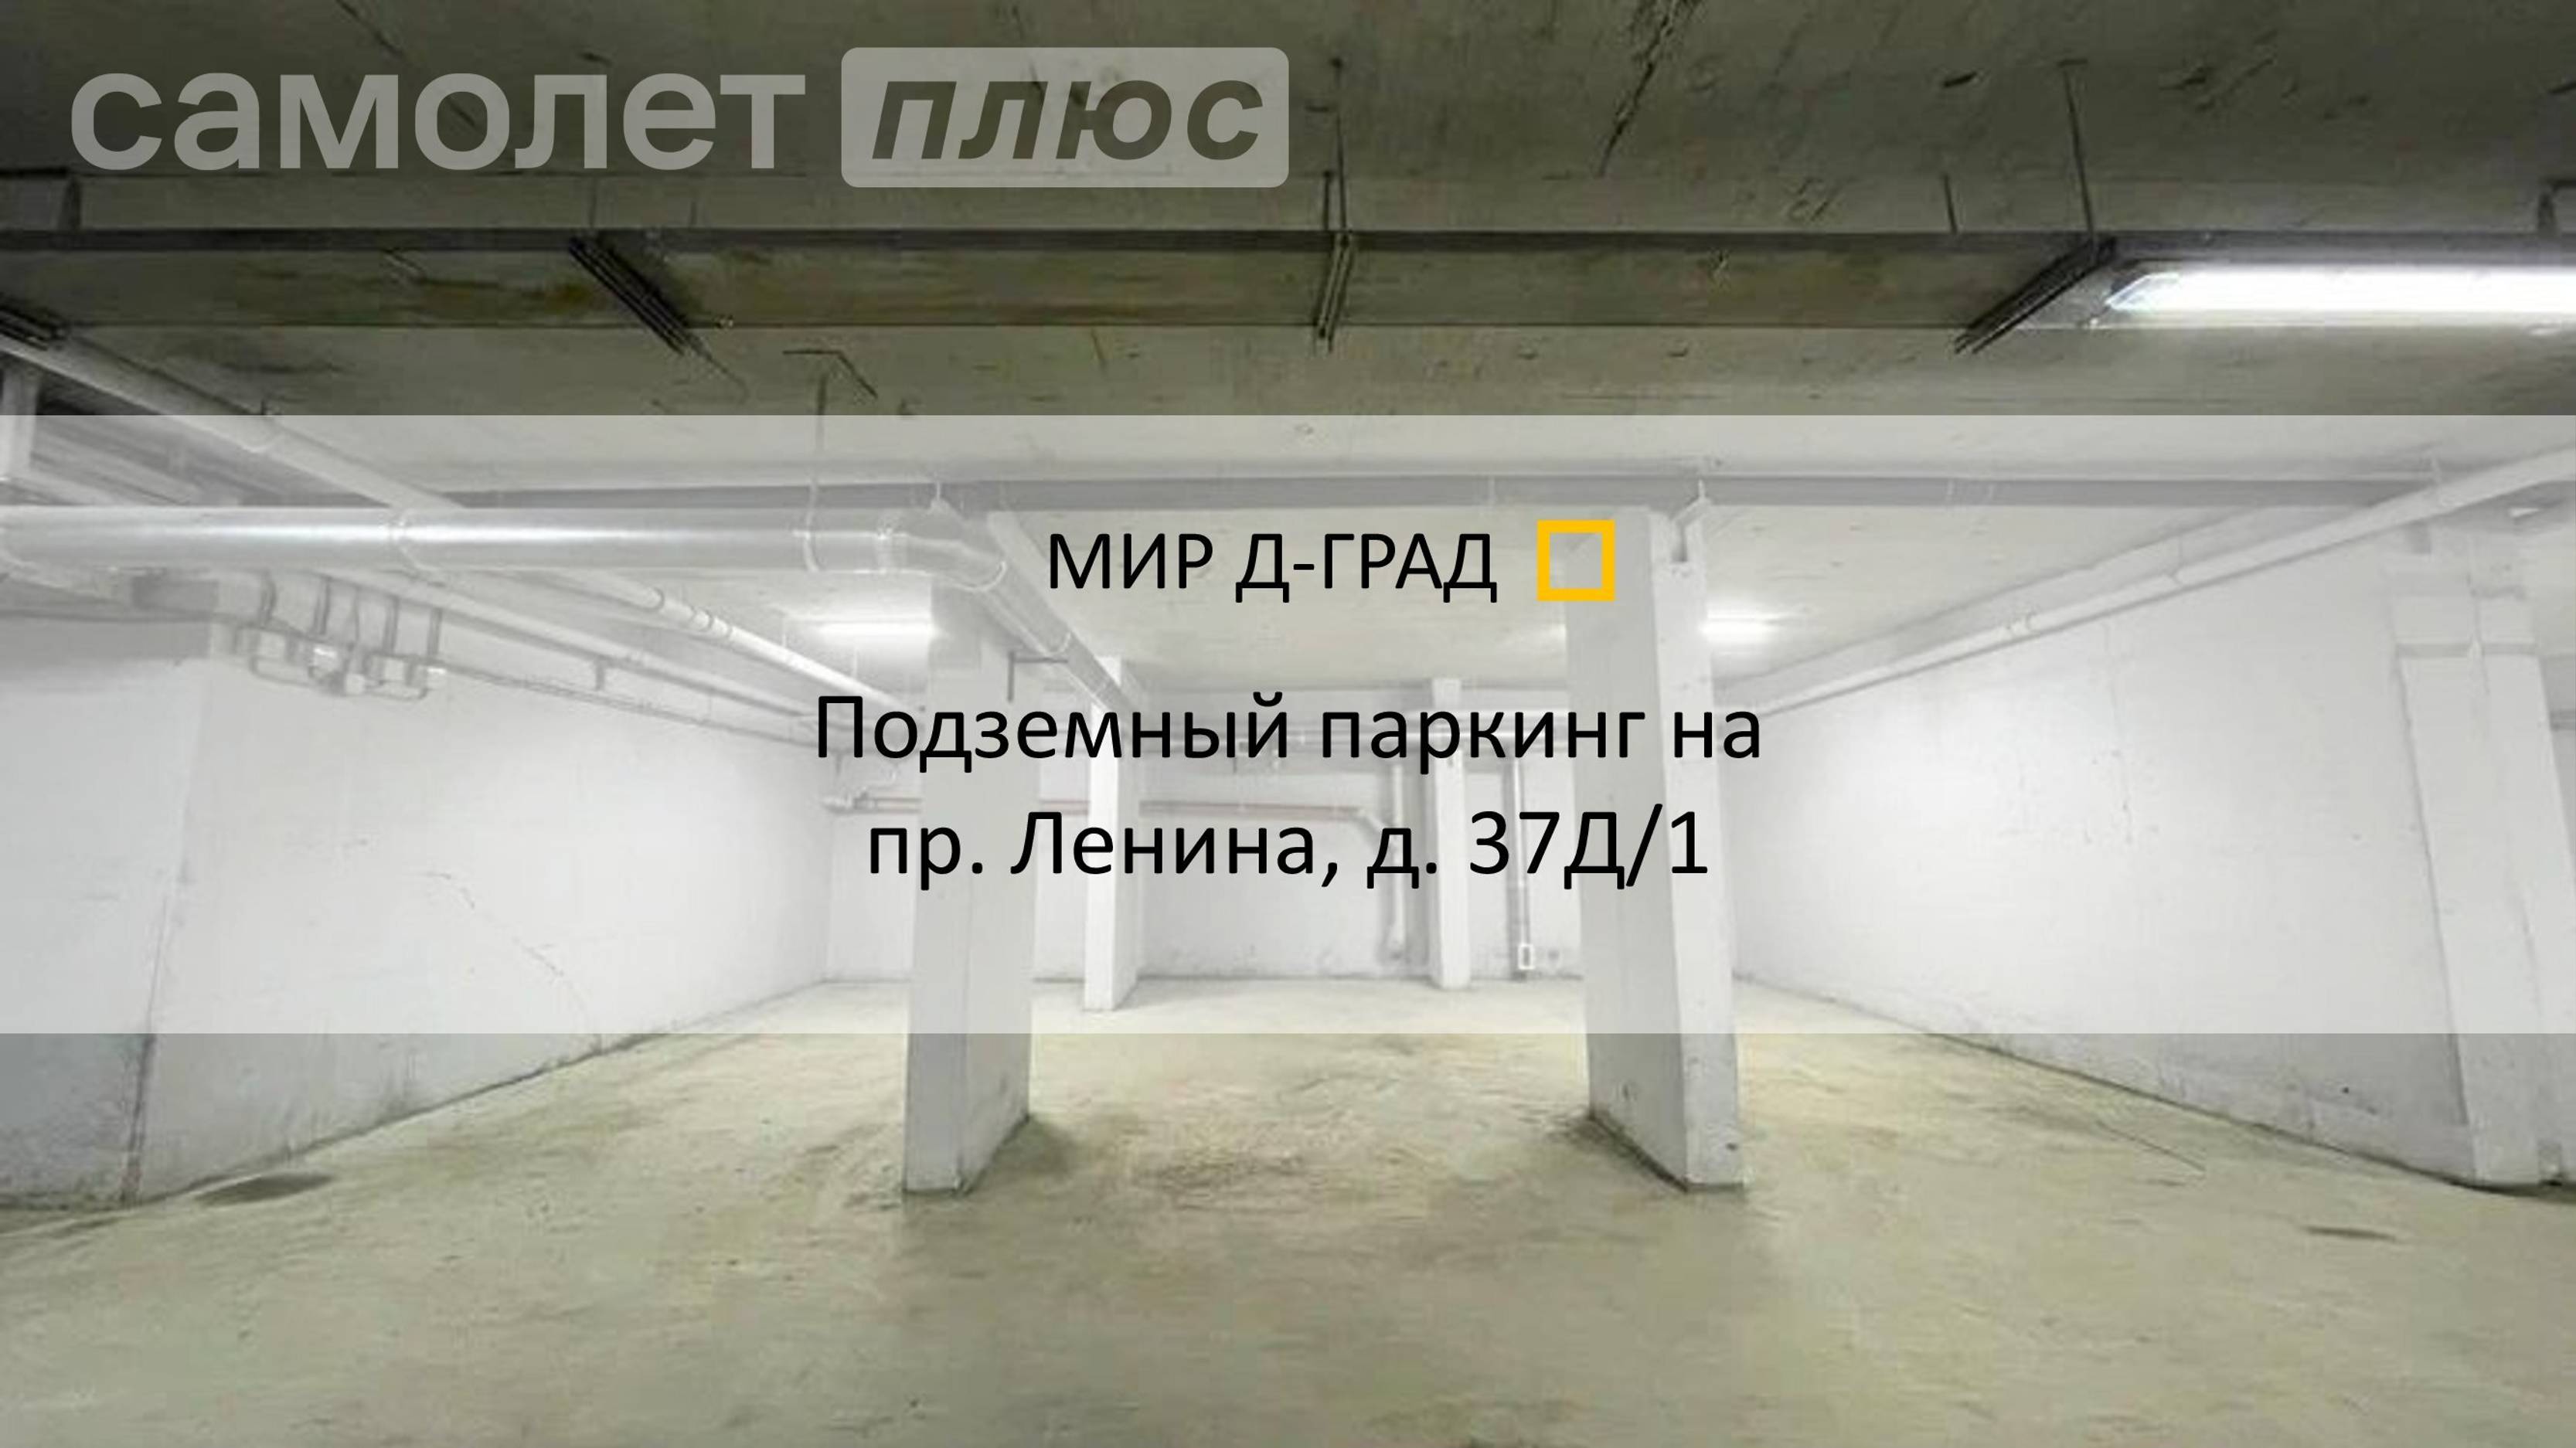 Подземный паркинг на ул. Ленина, д. 37Д/1, г. Димитровград, Ульяновская область